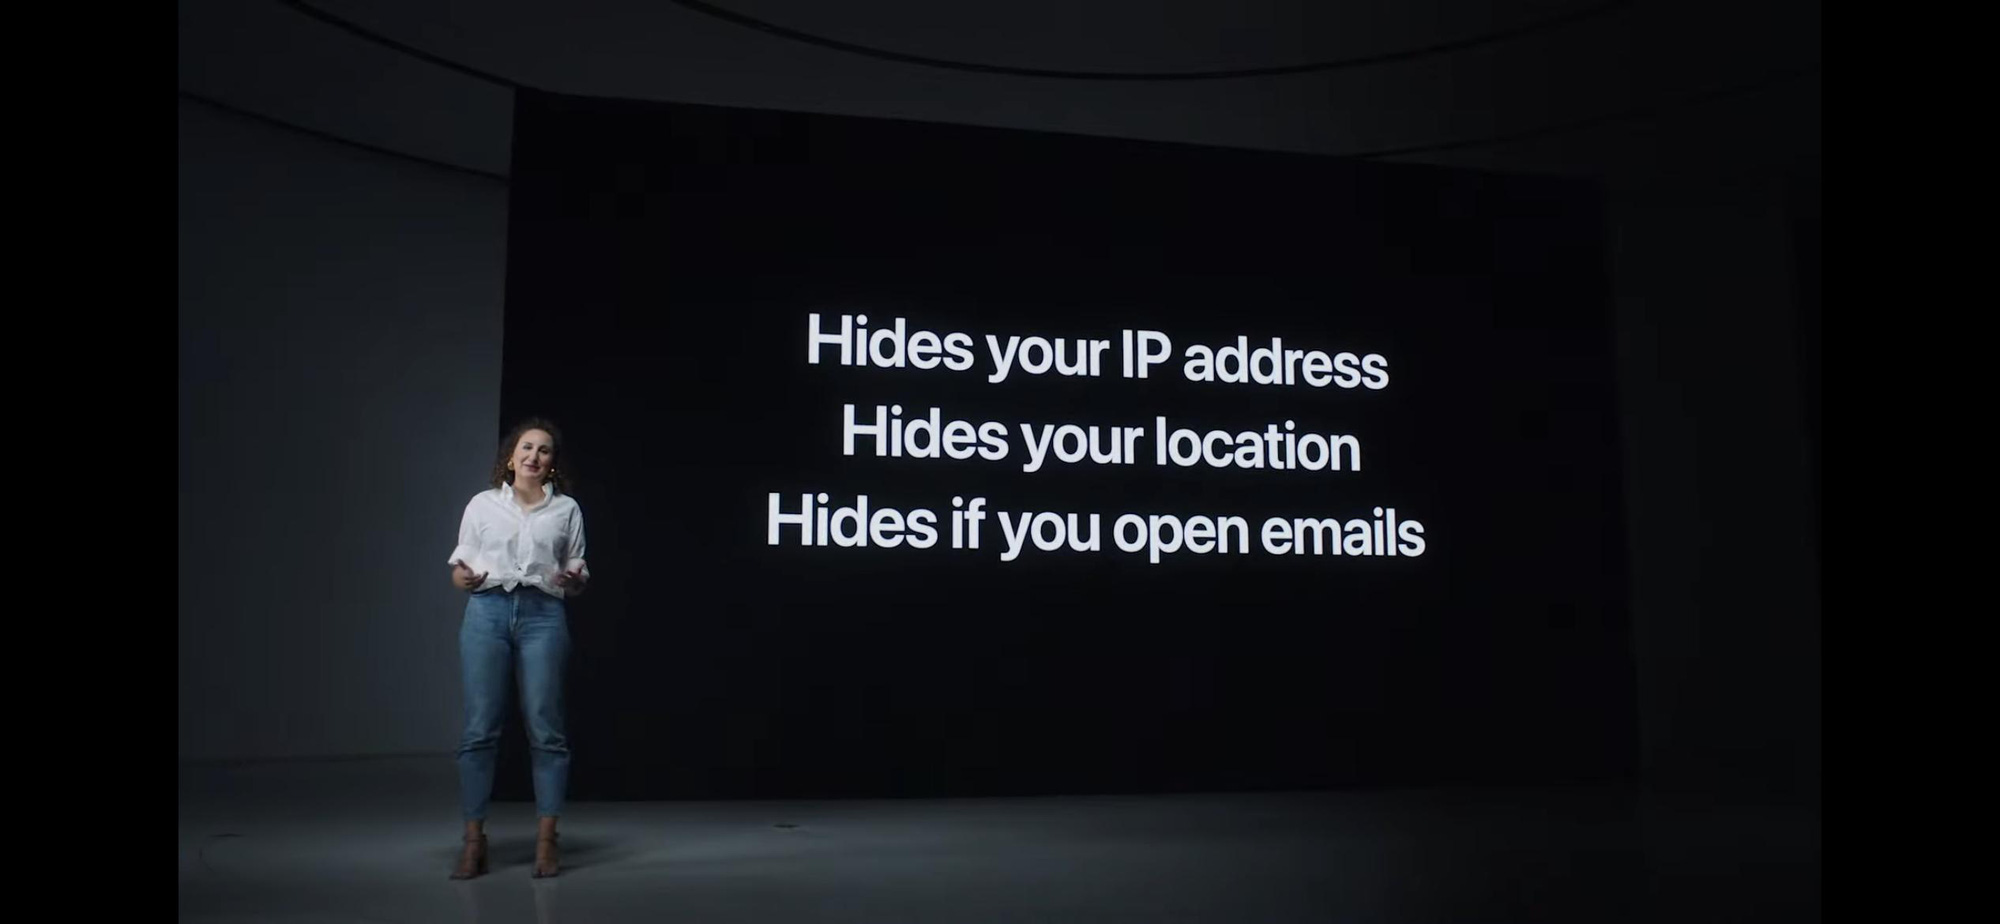 Apple sẽ thay đổi cách hoạt động của email trên iOS mới - Ảnh 2.